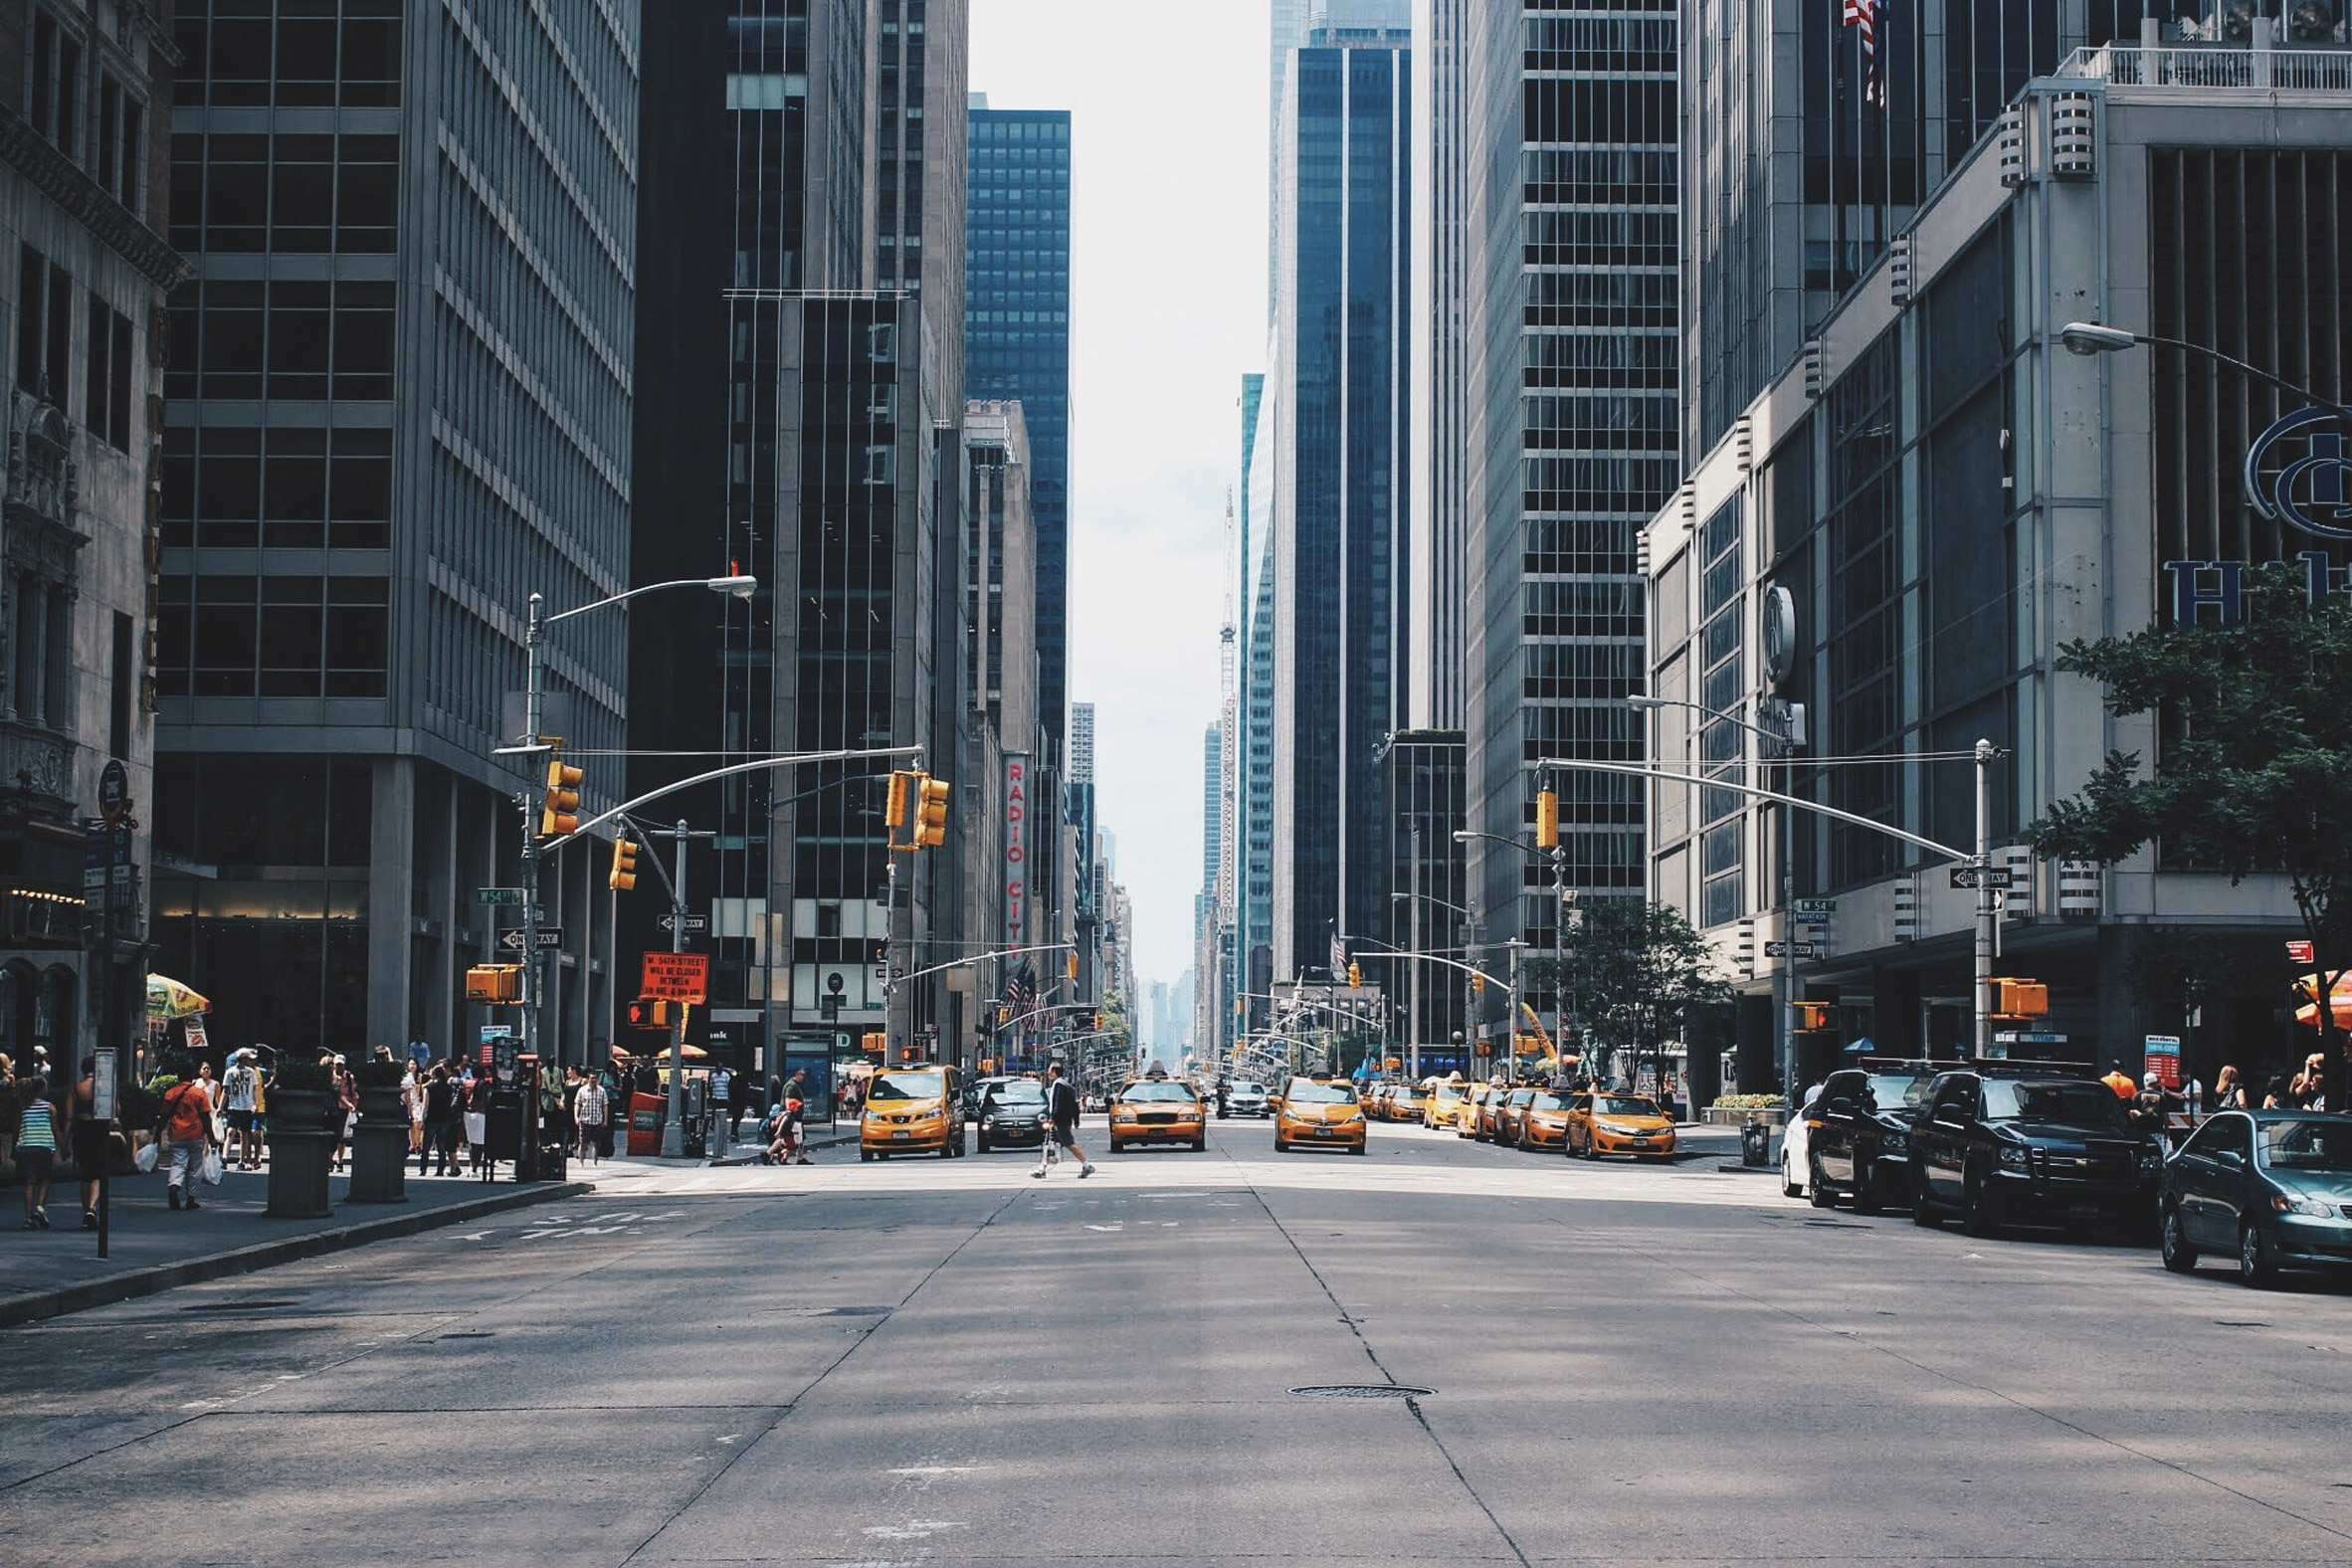 An avenue in Manhattan